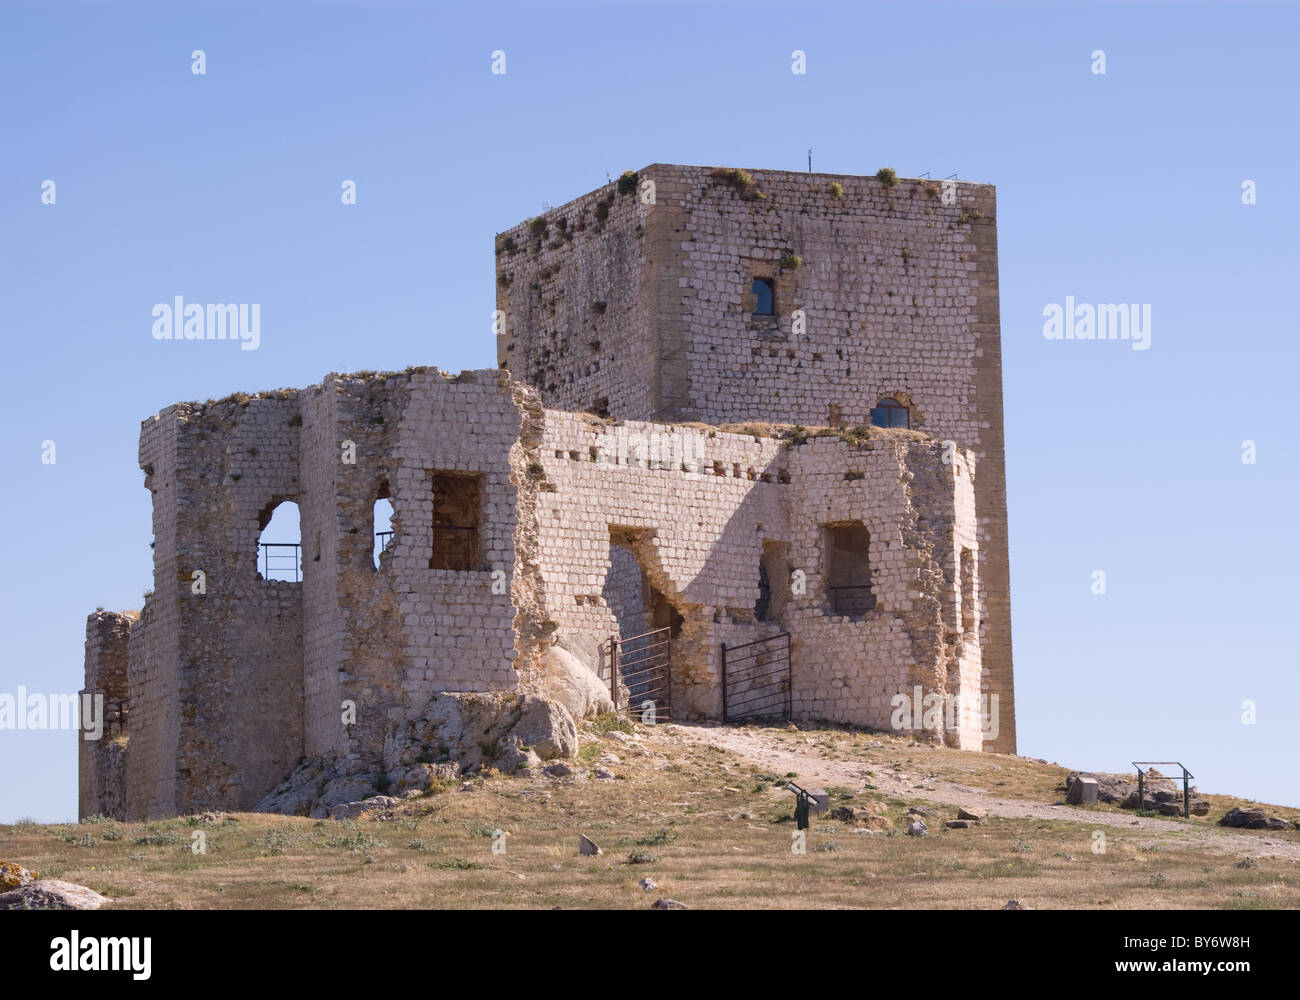 Le rovine del castello di Teba sul pendio di una collina in Andalusia Spagna Foto Stock